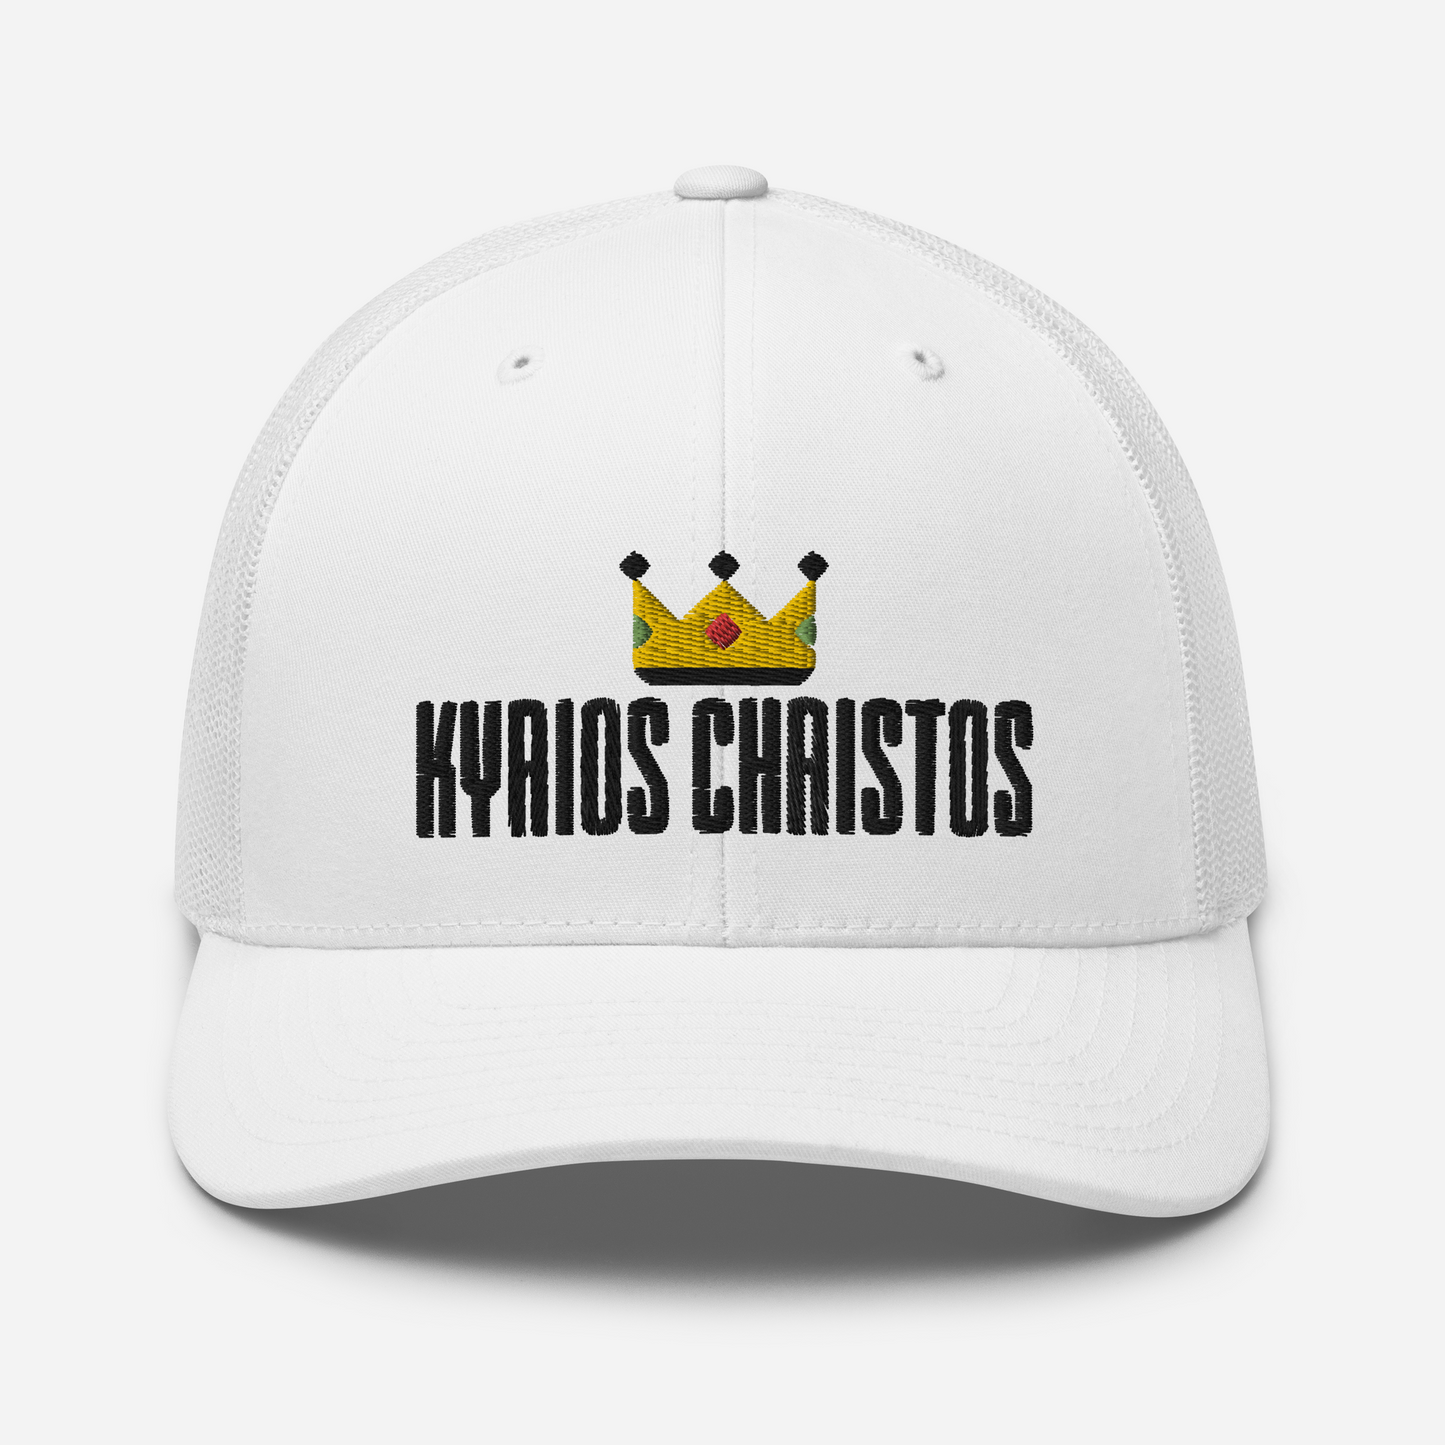 Kyrios Christos Trucker Hat